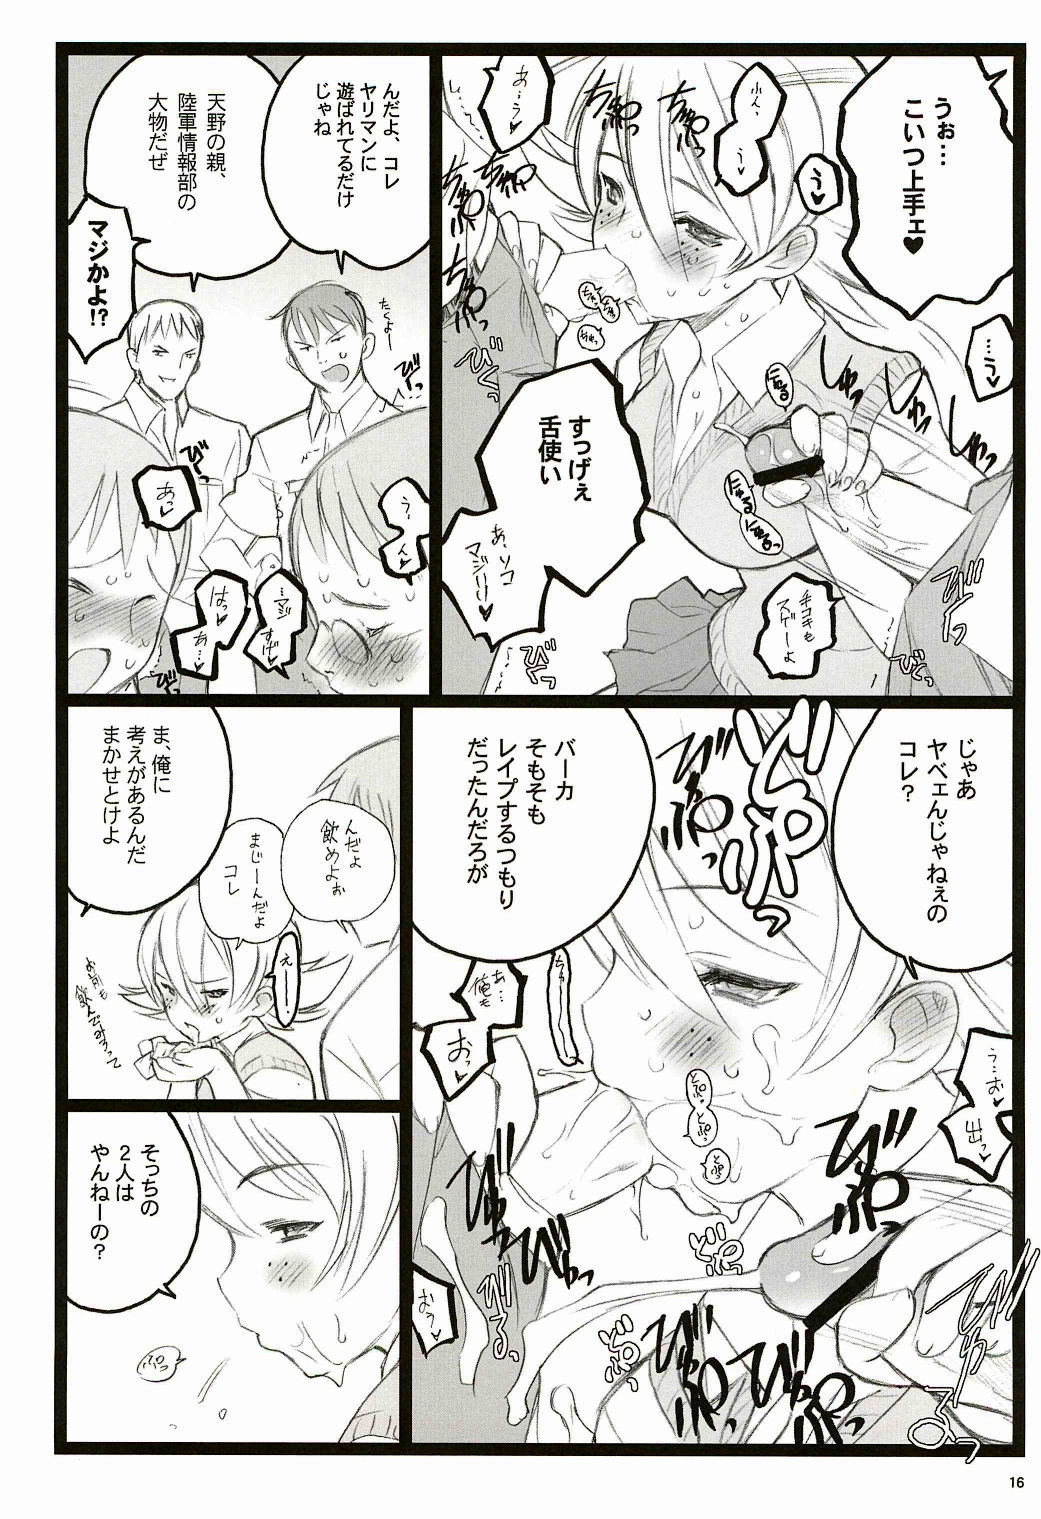 [Keumaya (Inoue Junichi)] Tsubasa BB Fuzokubon KF 18-kin Eromanga [希有馬屋 (井上純弌)] ツバサBB付属本 KF18禁エロ漫画